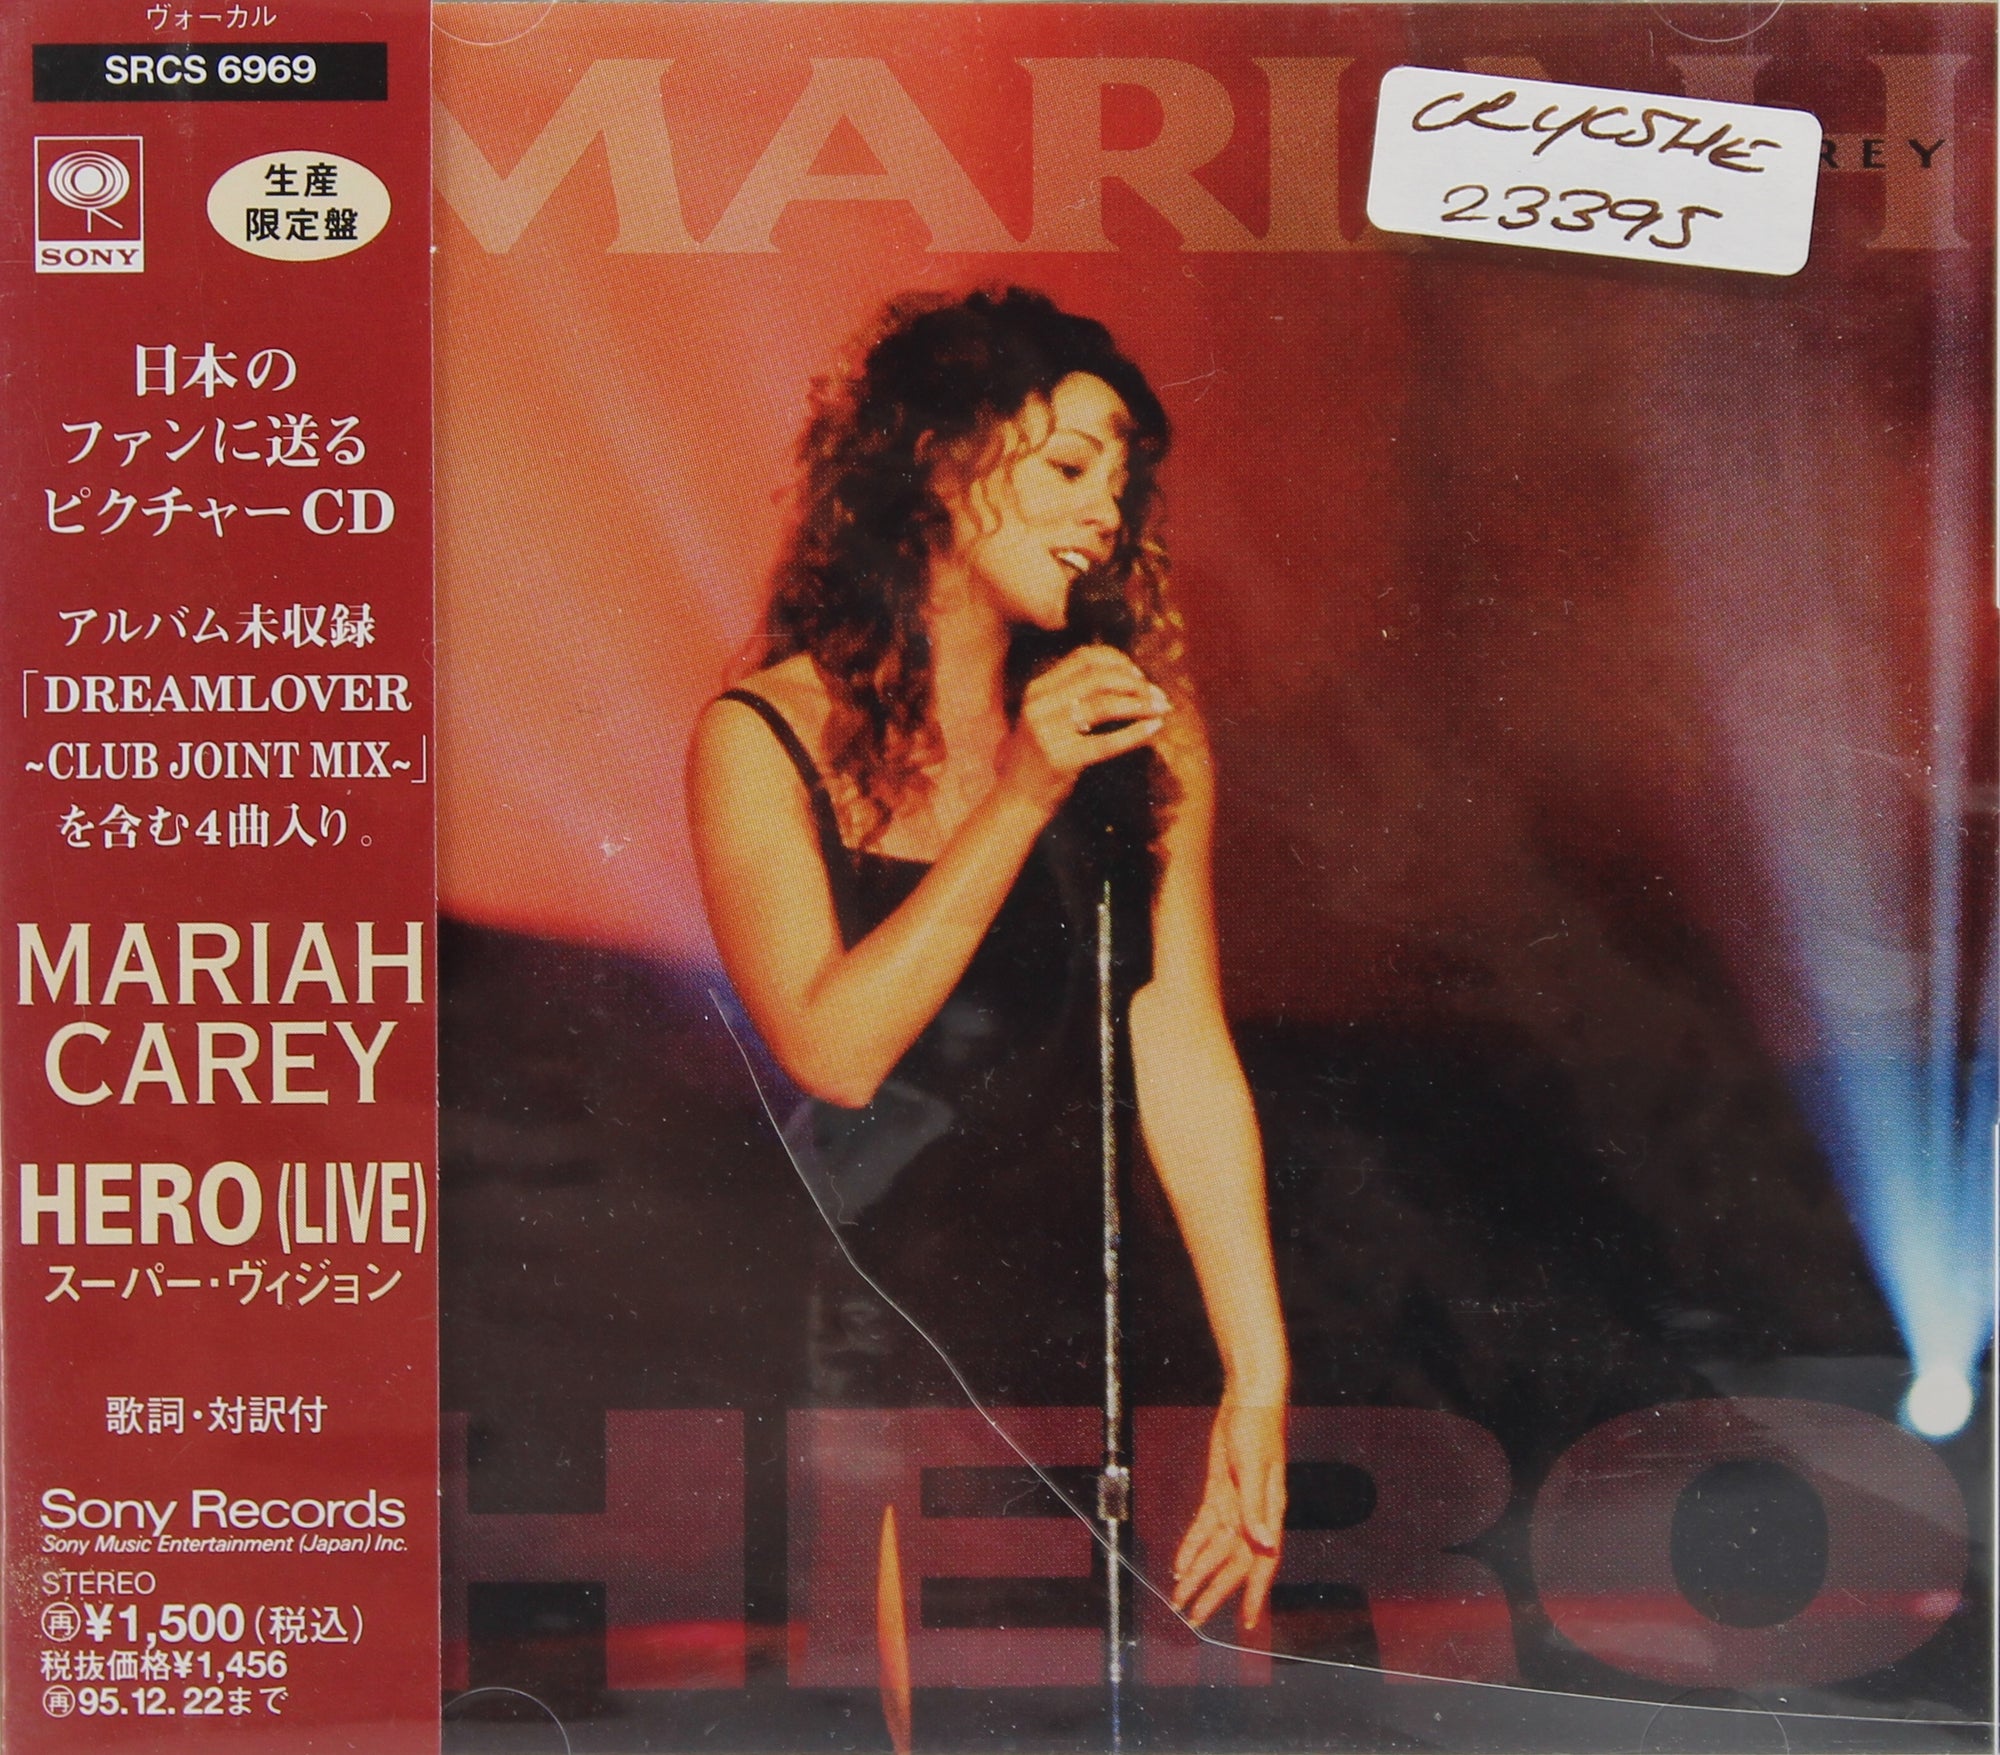 Mariah Carey – Heartbreaker, CD Single, Japan 1999 - preciousvinyl